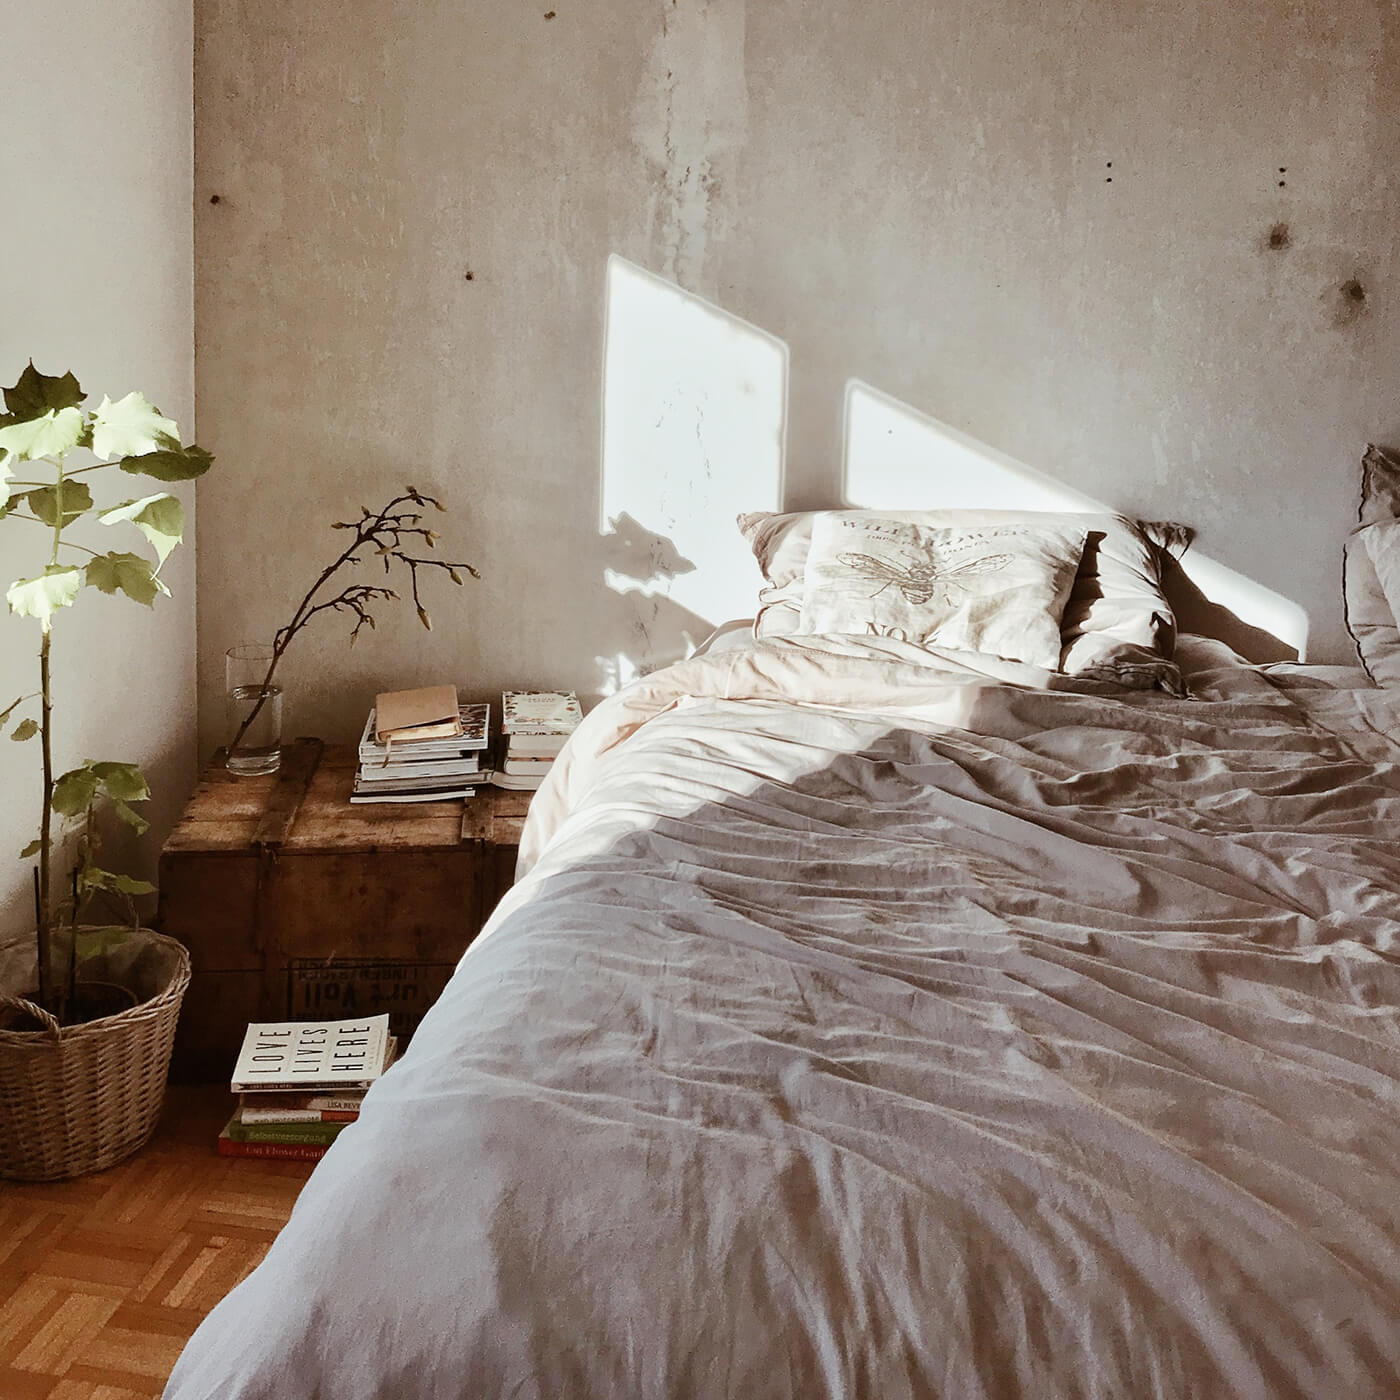 french linen sheets for bedding, hemp duvet bedroom decor